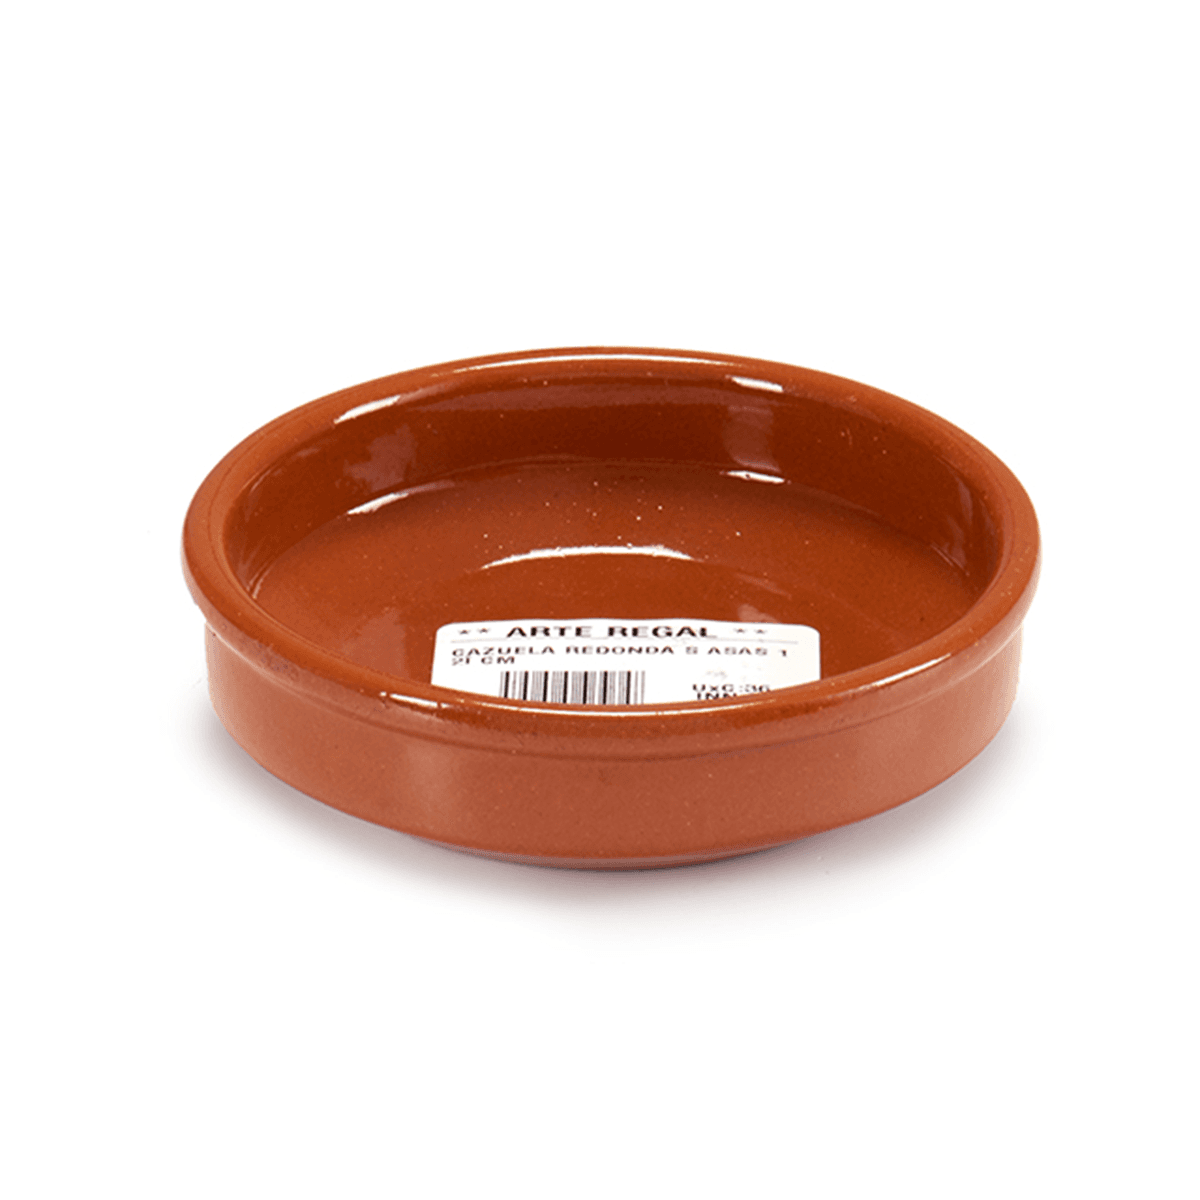 صحن فخار دائري عميق 12 سم صناعة اسبانيا بني آرت ريجال Arte Regal Brown Clay Round Deep Plate